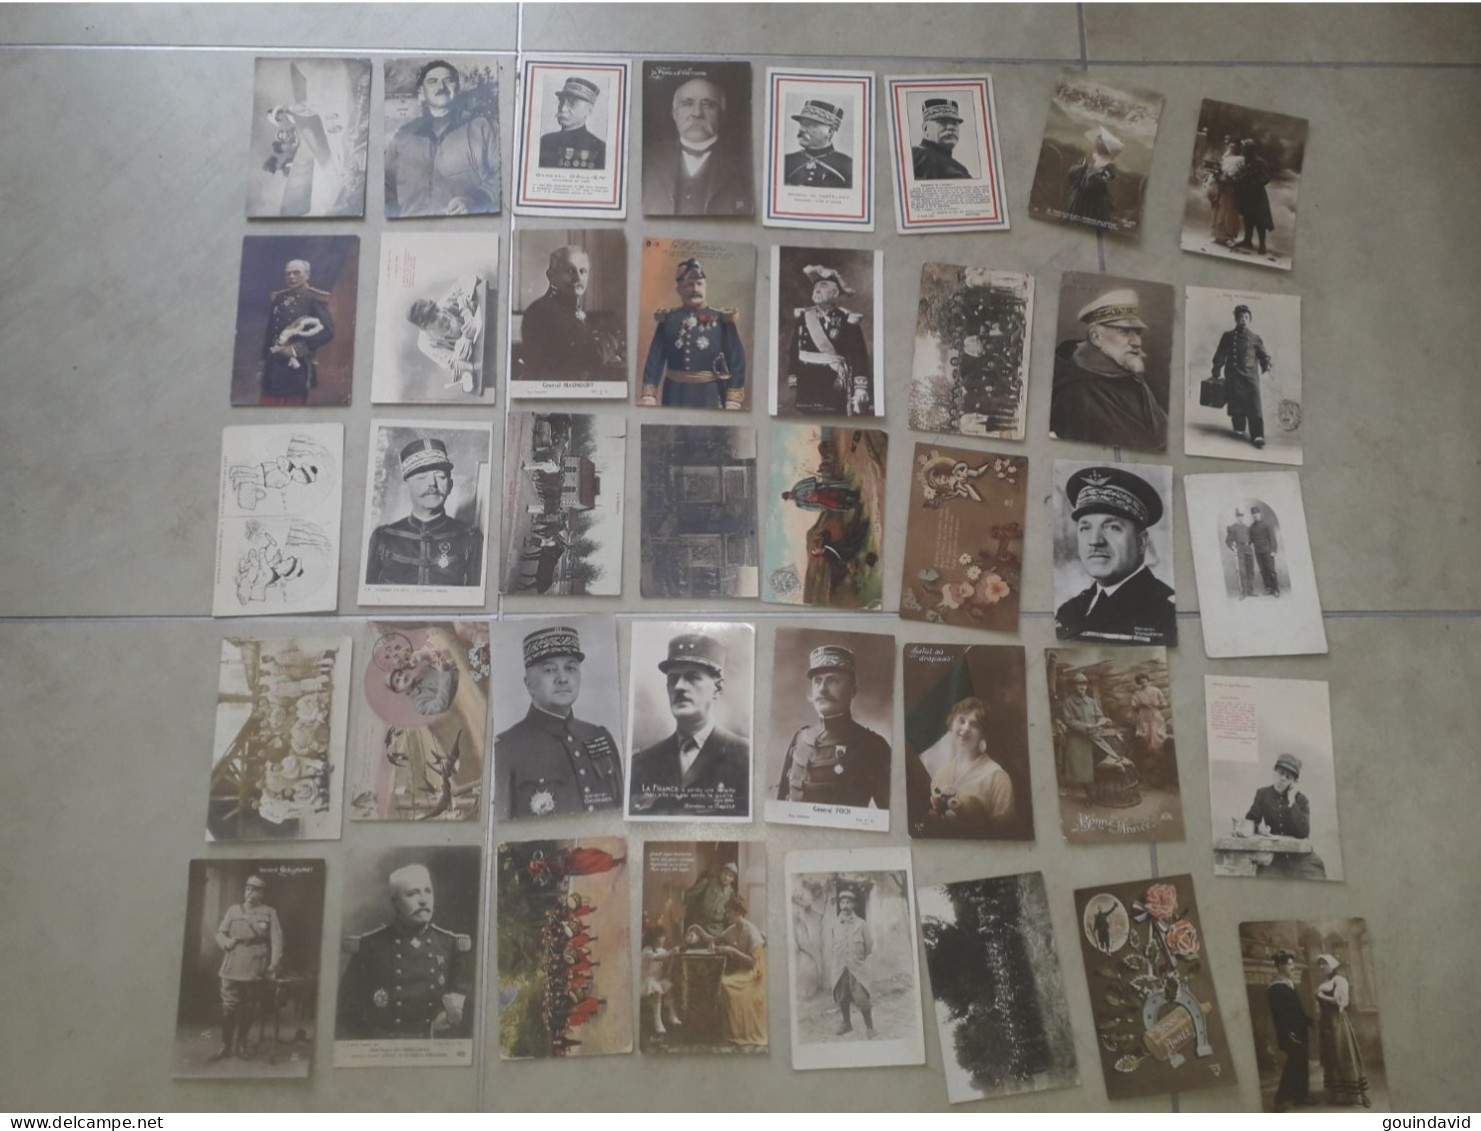 Lot  De  Photos  Et  Cartes  Postales  Militaire - Documents